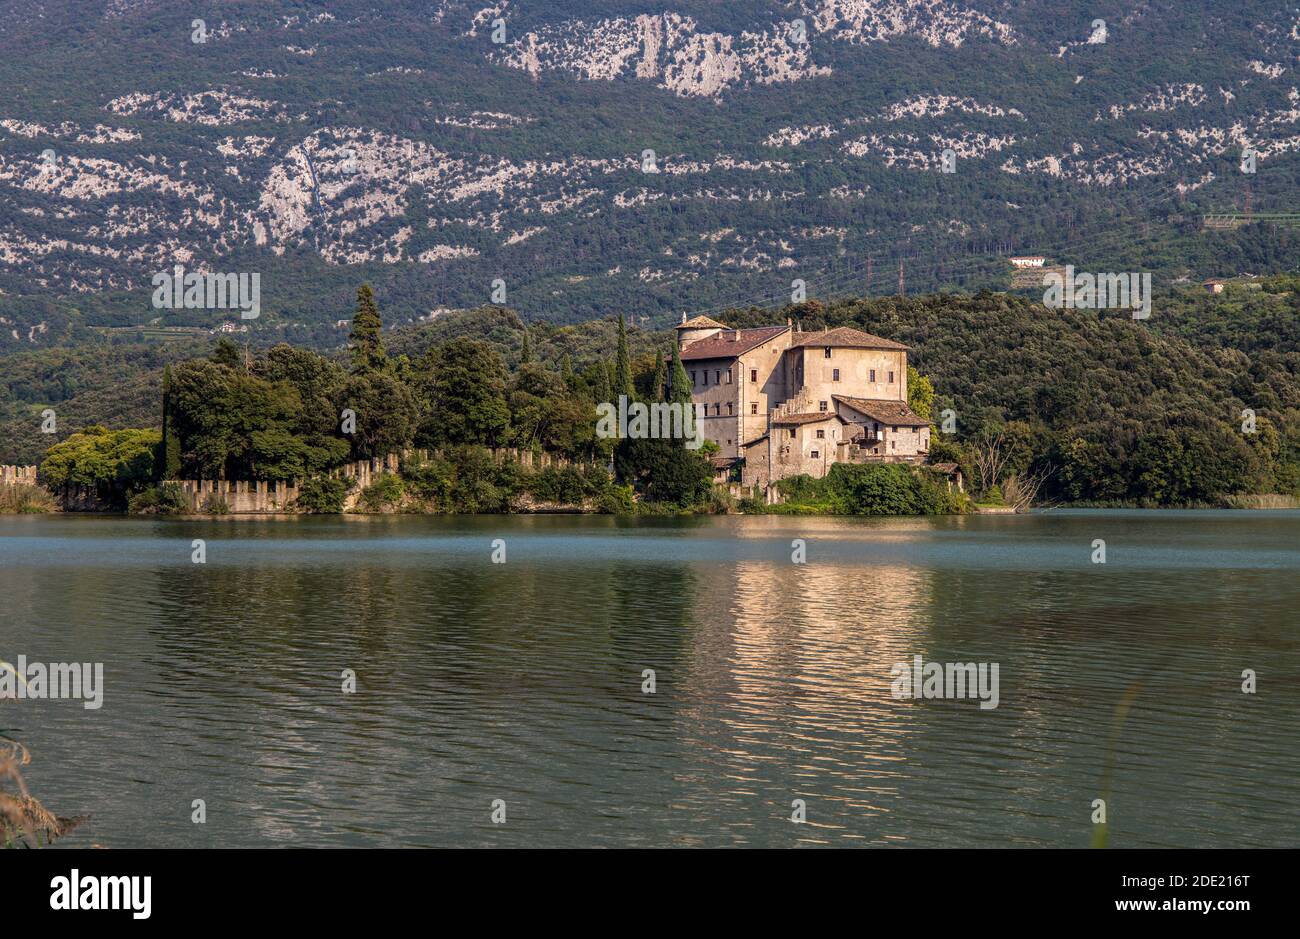 Castello di Toblino, nel comune di Madruzzo, provincia di Trento, Italia. Foto Stock